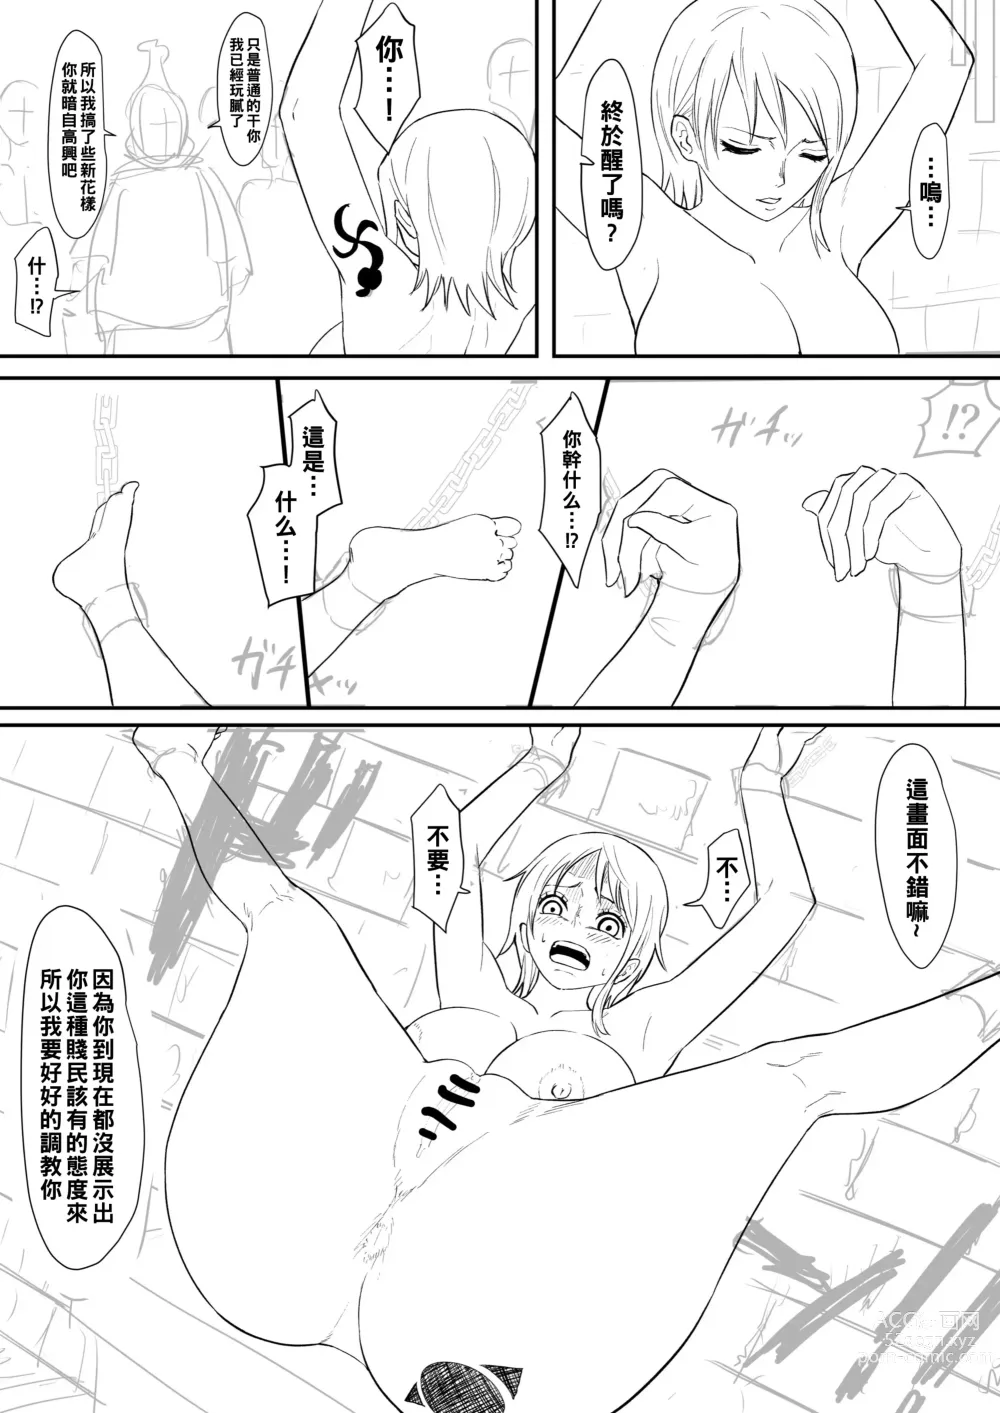 Page 7 of doujinshi Nami Manga